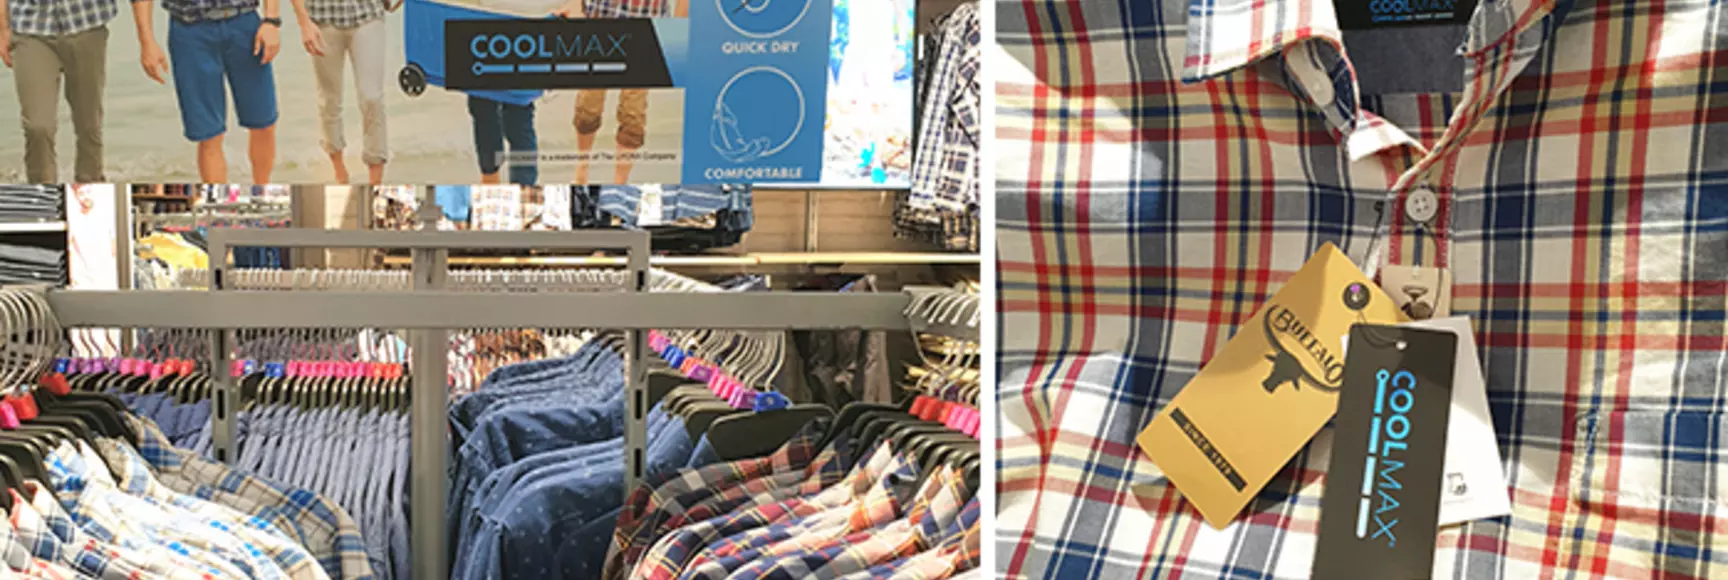  店内正展示Buffalo夏季衬衫，配以品牌联合设计的宣传物料推广COOLMAX®技术在衬衫中的应用。